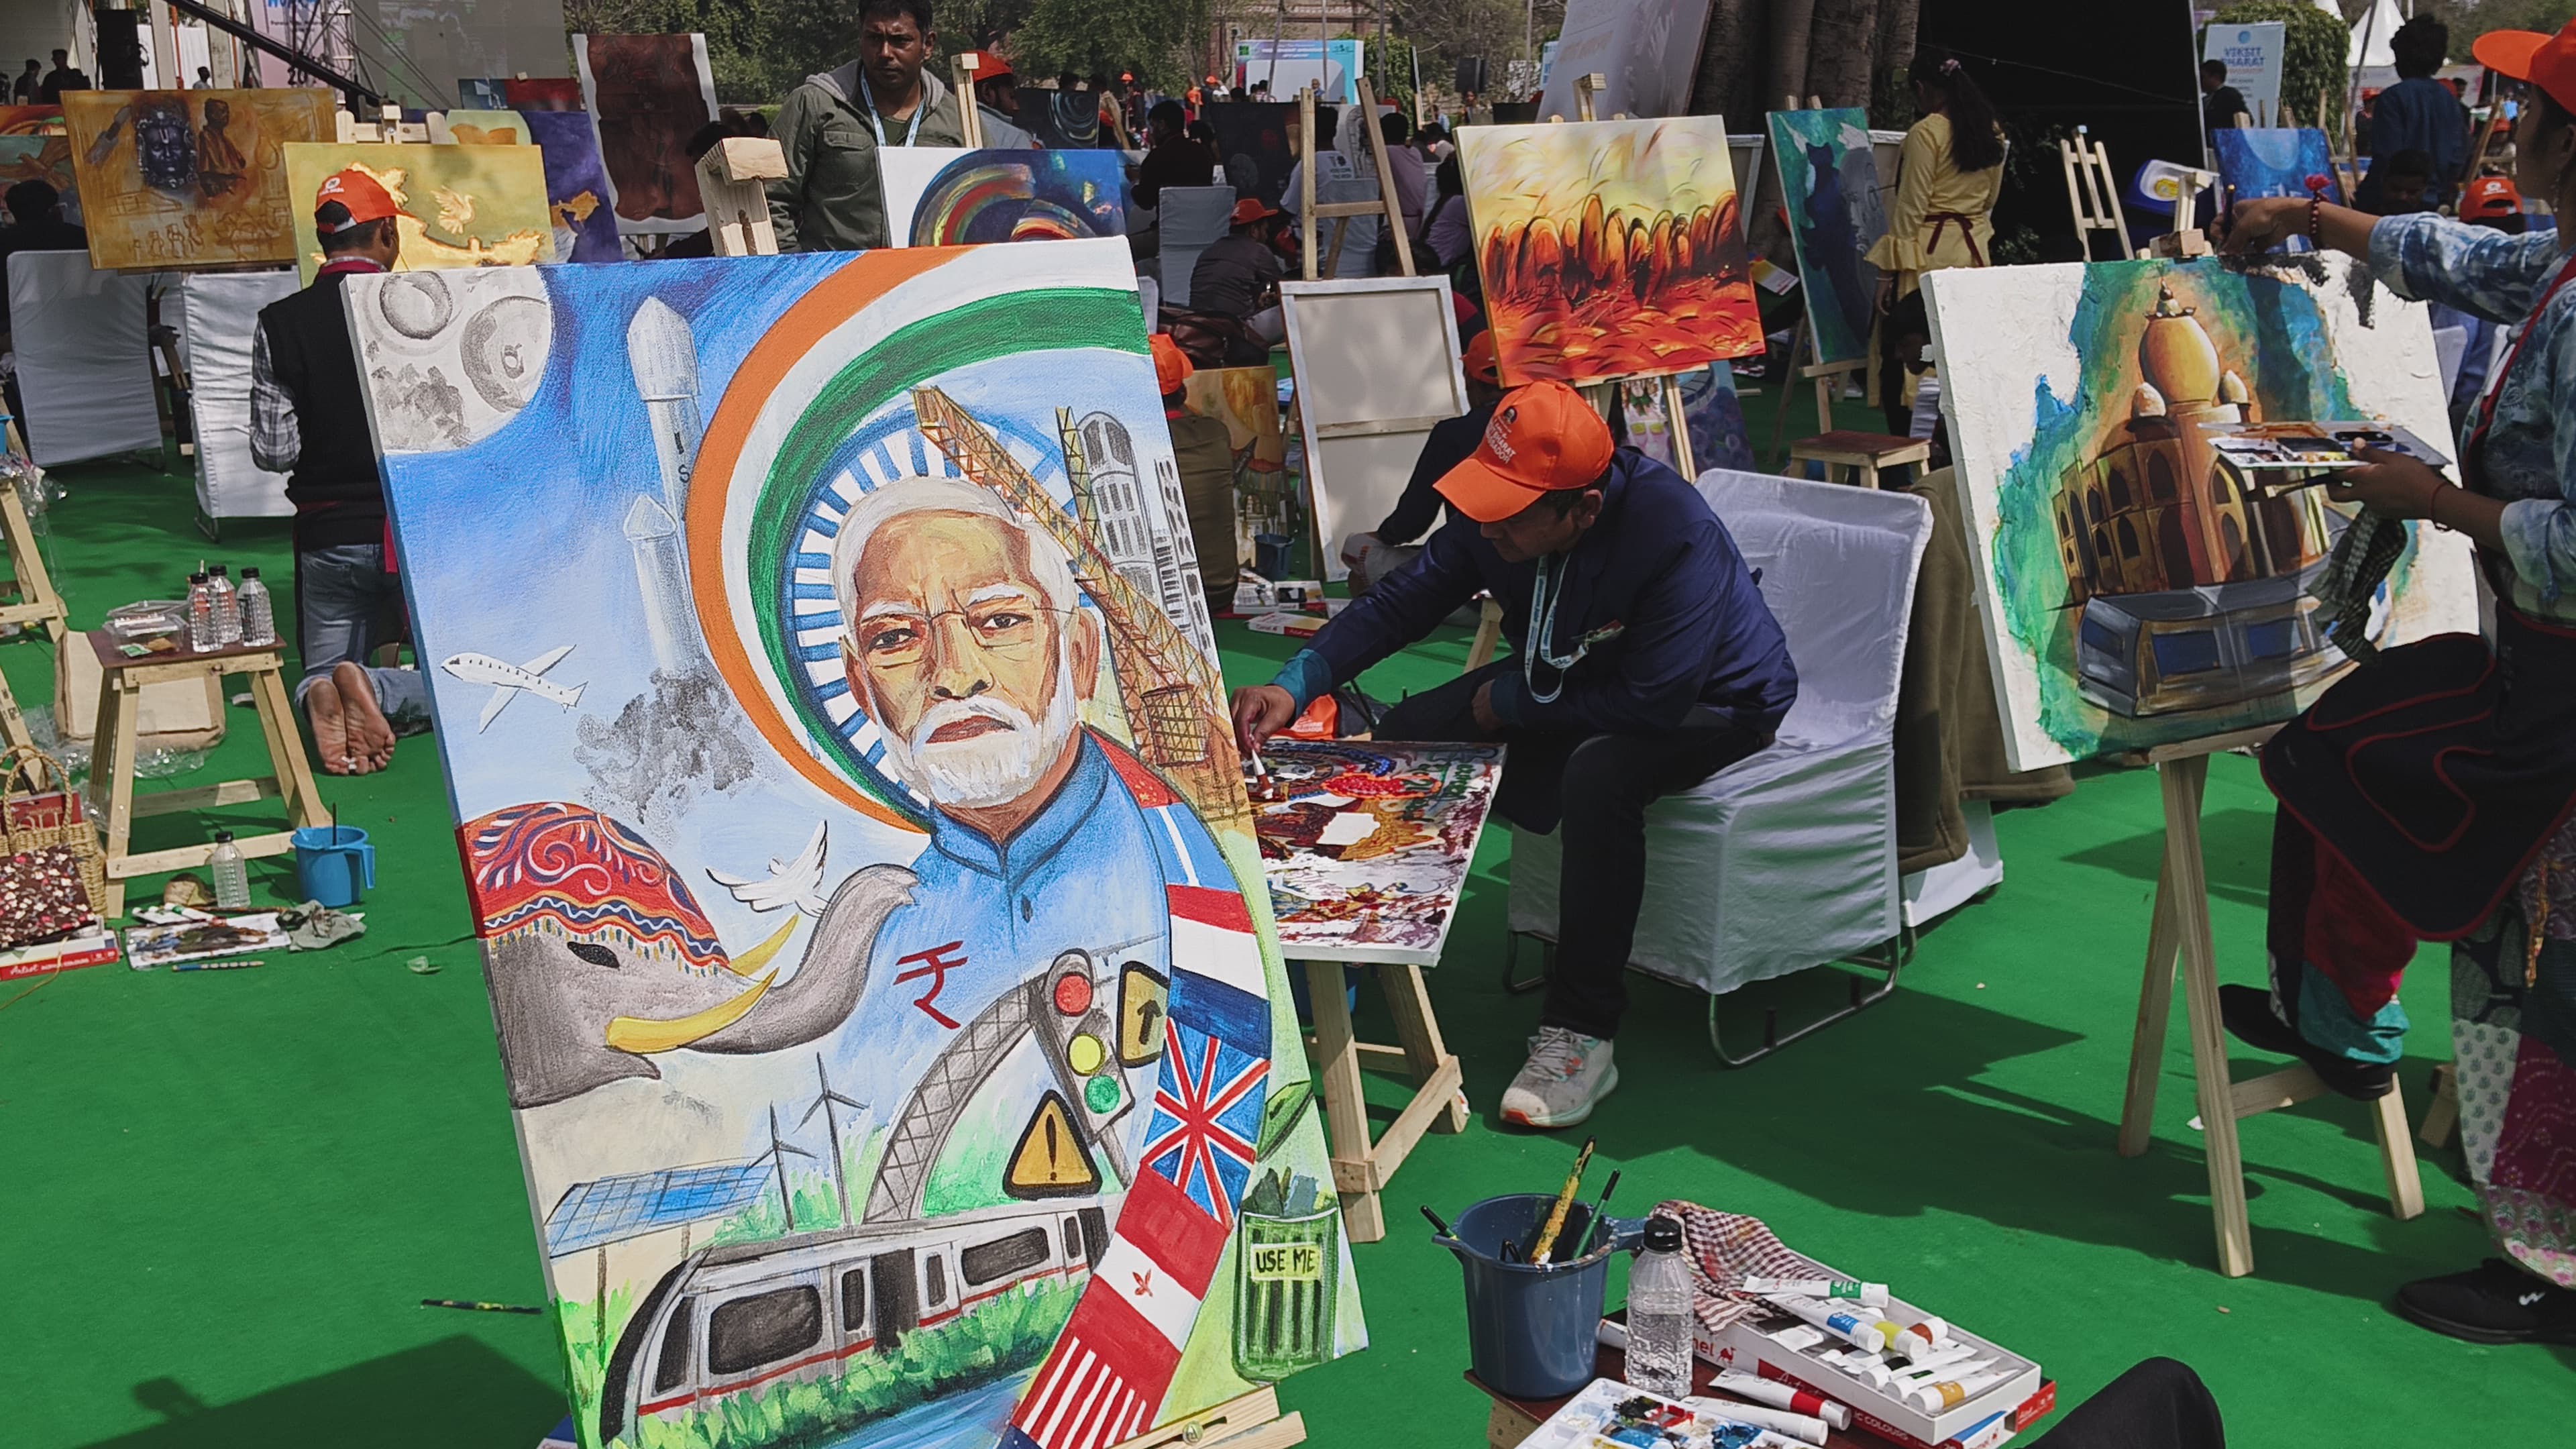 दिल्ली के पुराने किले में आर्टिस्ट वर्कशॉप का आयोजन, दिखी विकसित भारत की झलक